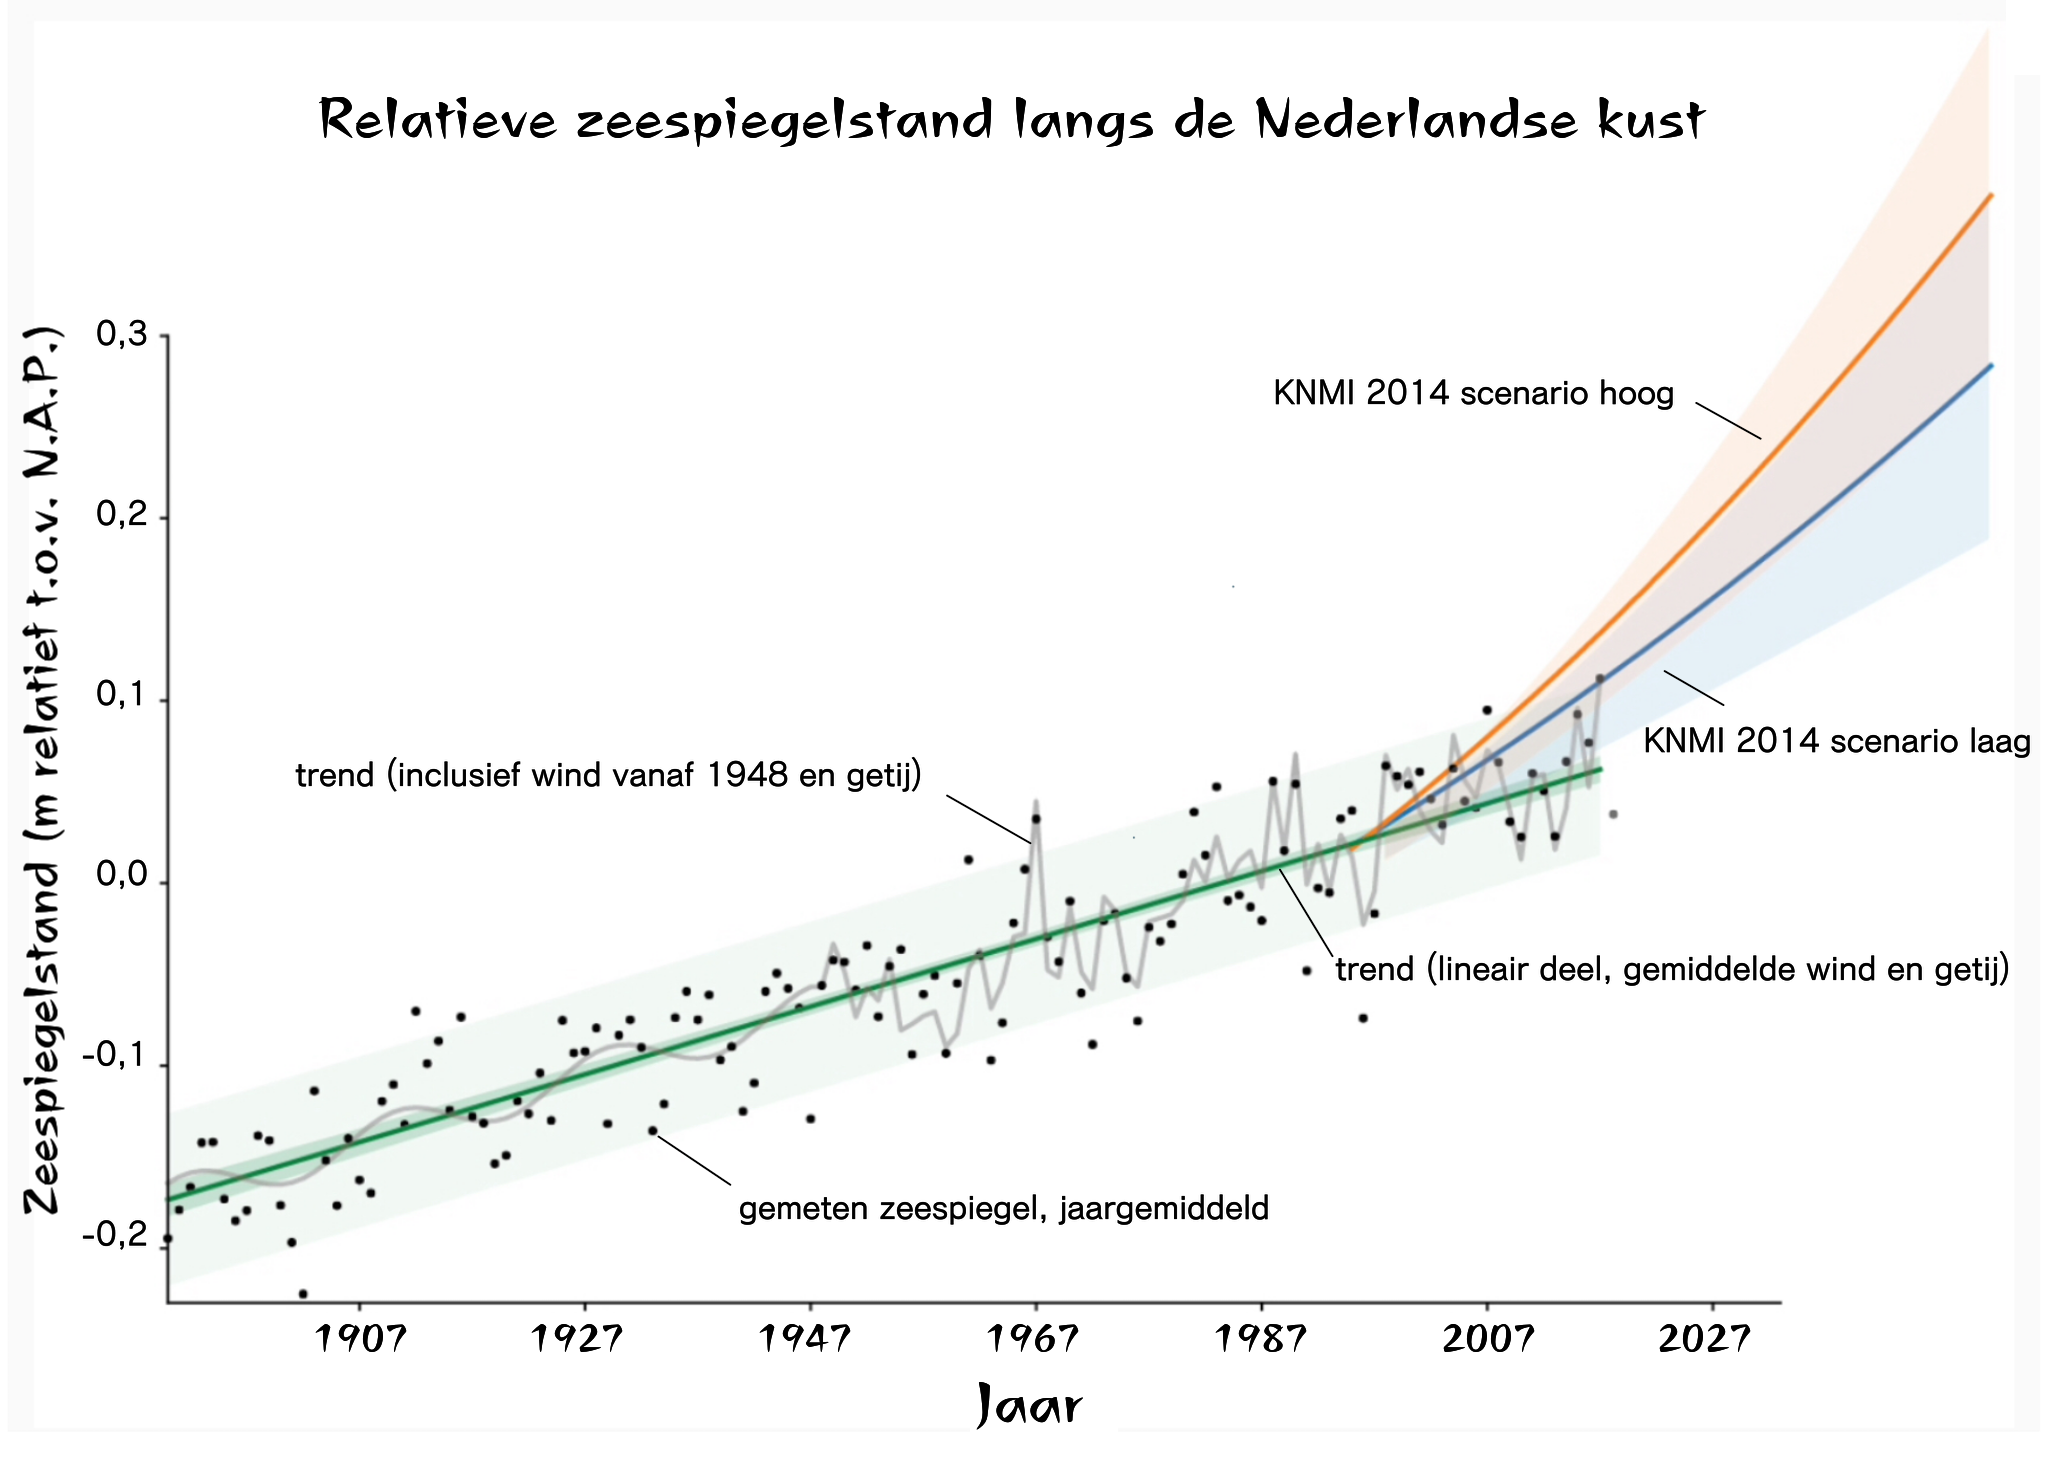 grafiek: De stijging van de zeespiegel in nederland volgens het Nederlandse kennisinstituut Deltares.